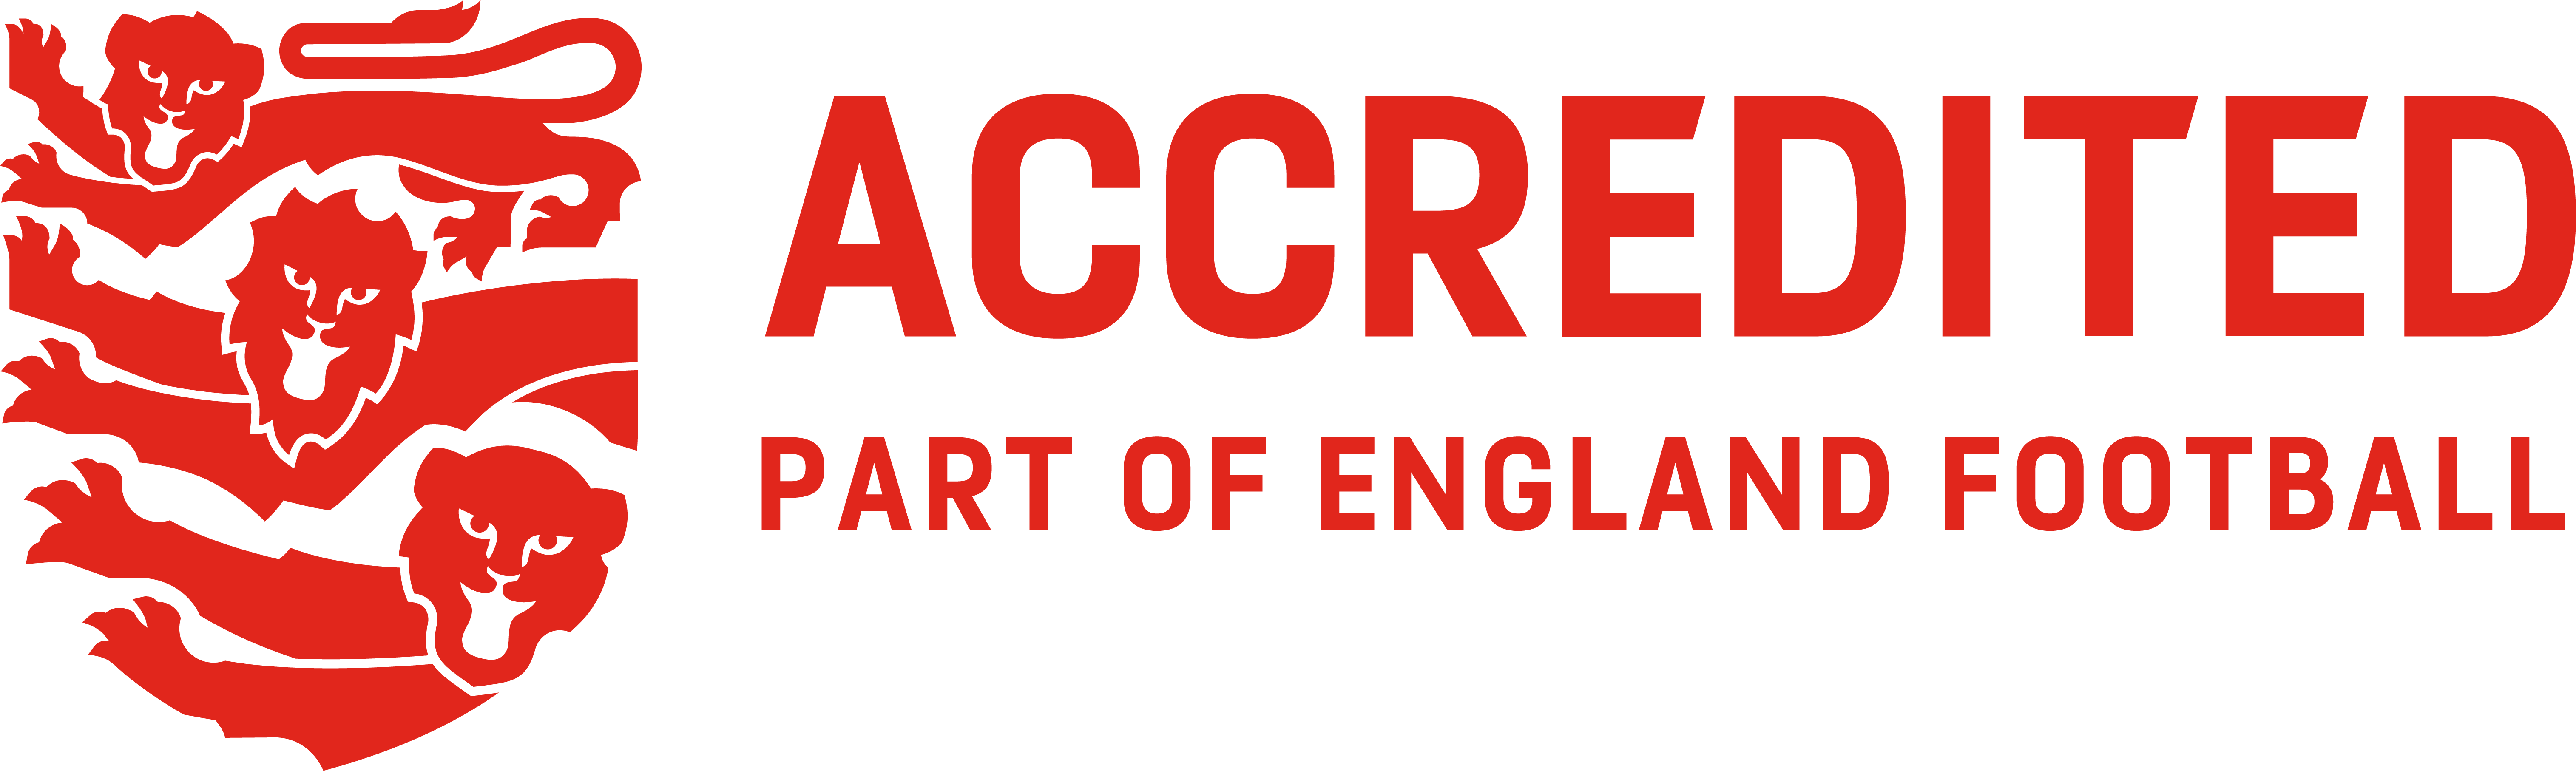 FA Accredited League